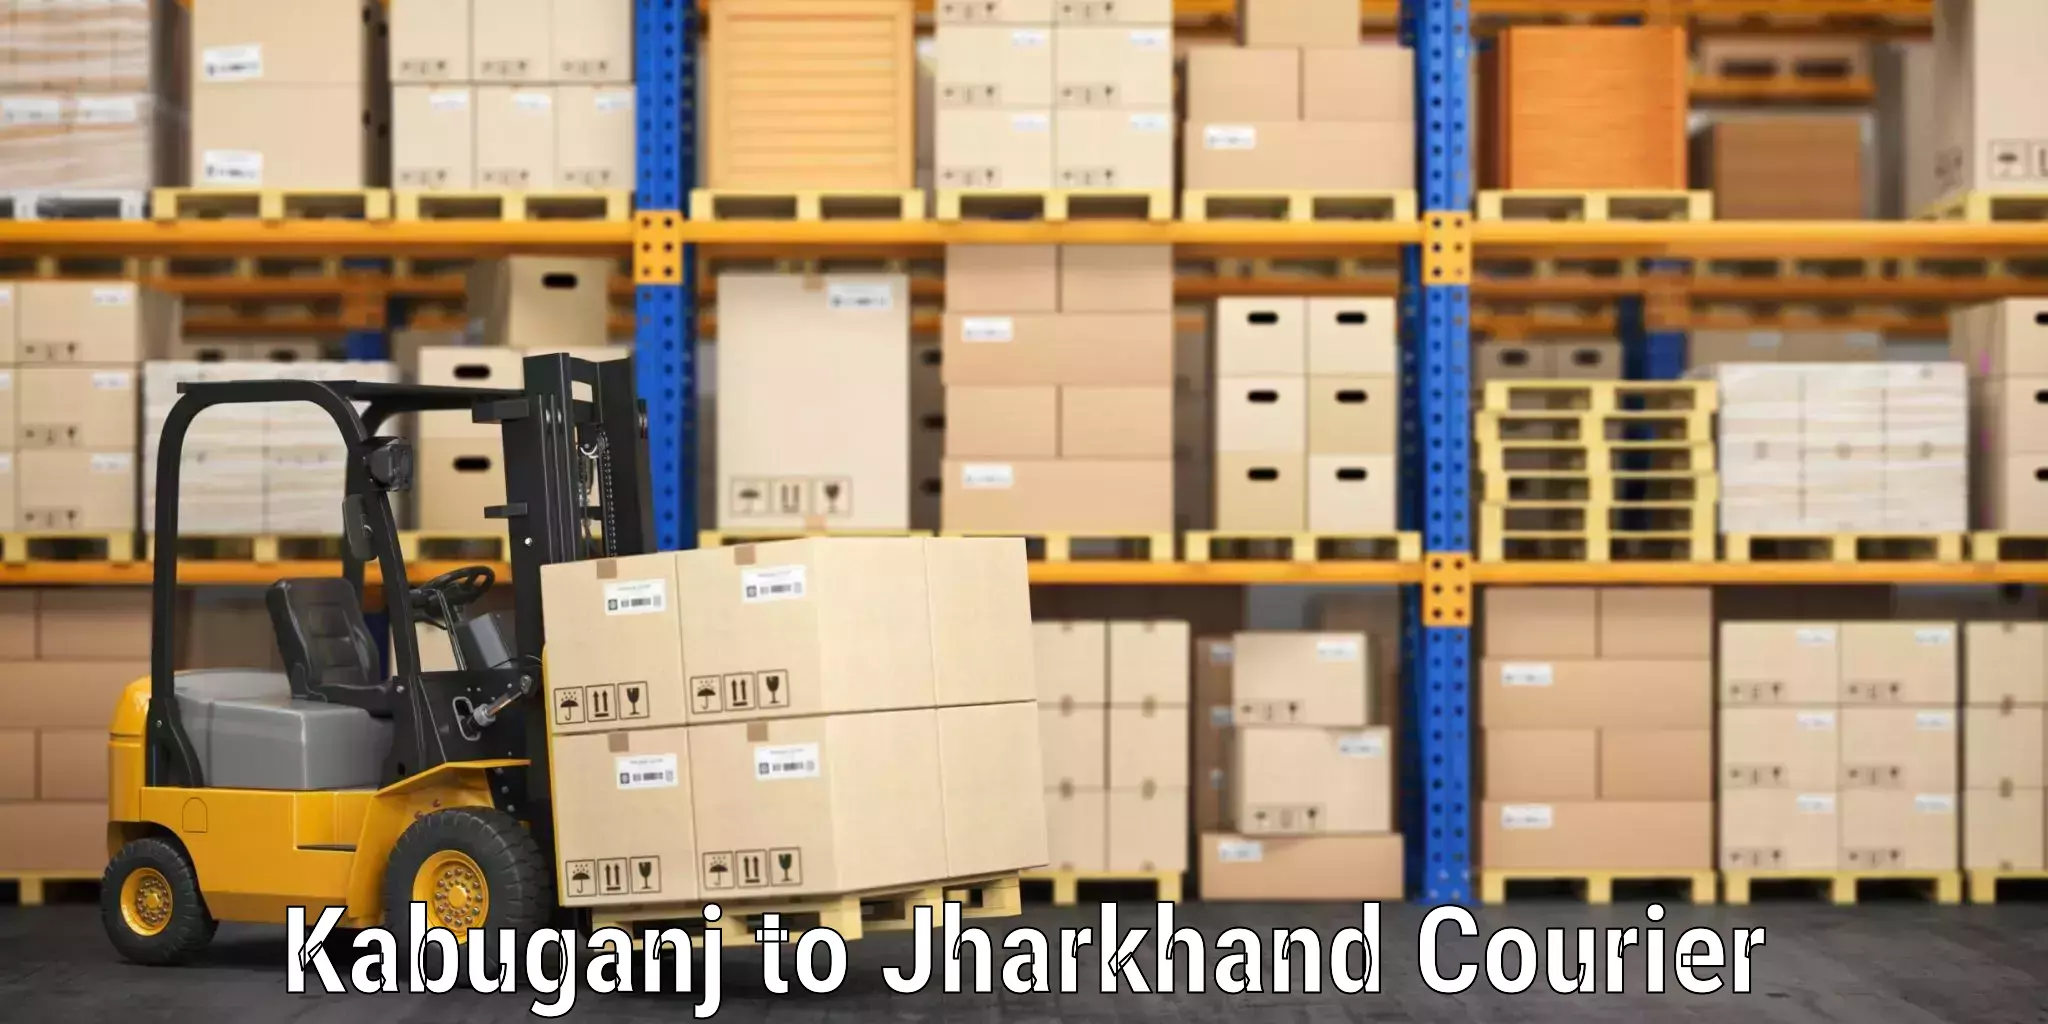 High-quality baggage shipment Kabuganj to Jamshedpur